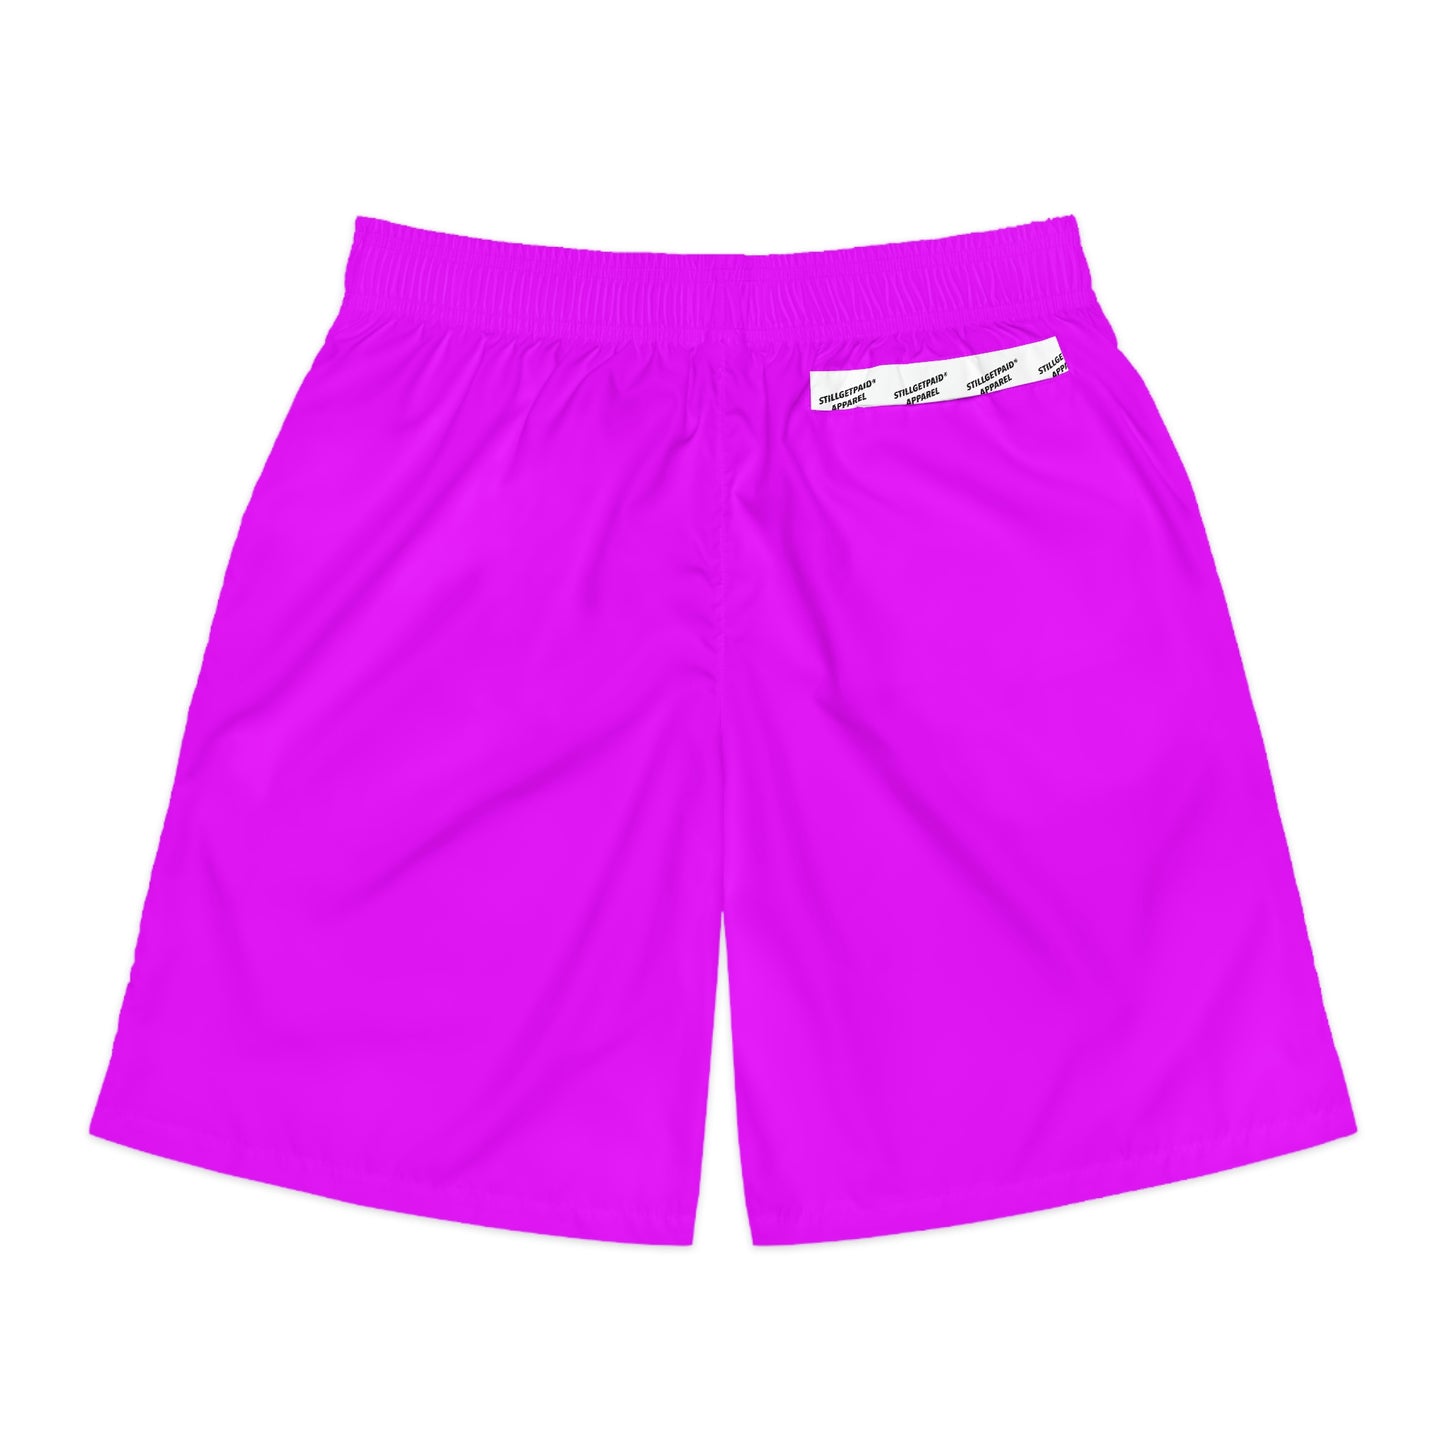 STILLGETPAID® APPAREL Men's Jogger Shorts